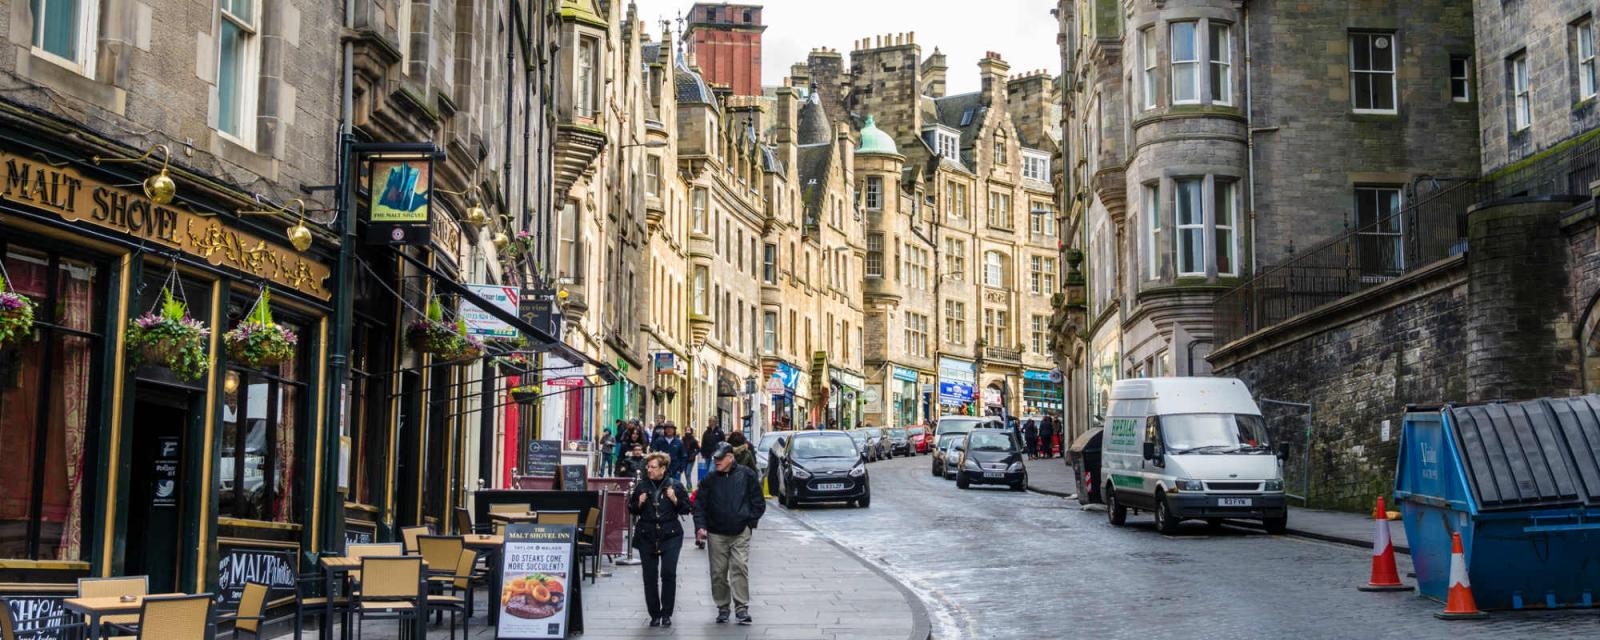 Mijn must do's in Edinburgh | CityZapper 